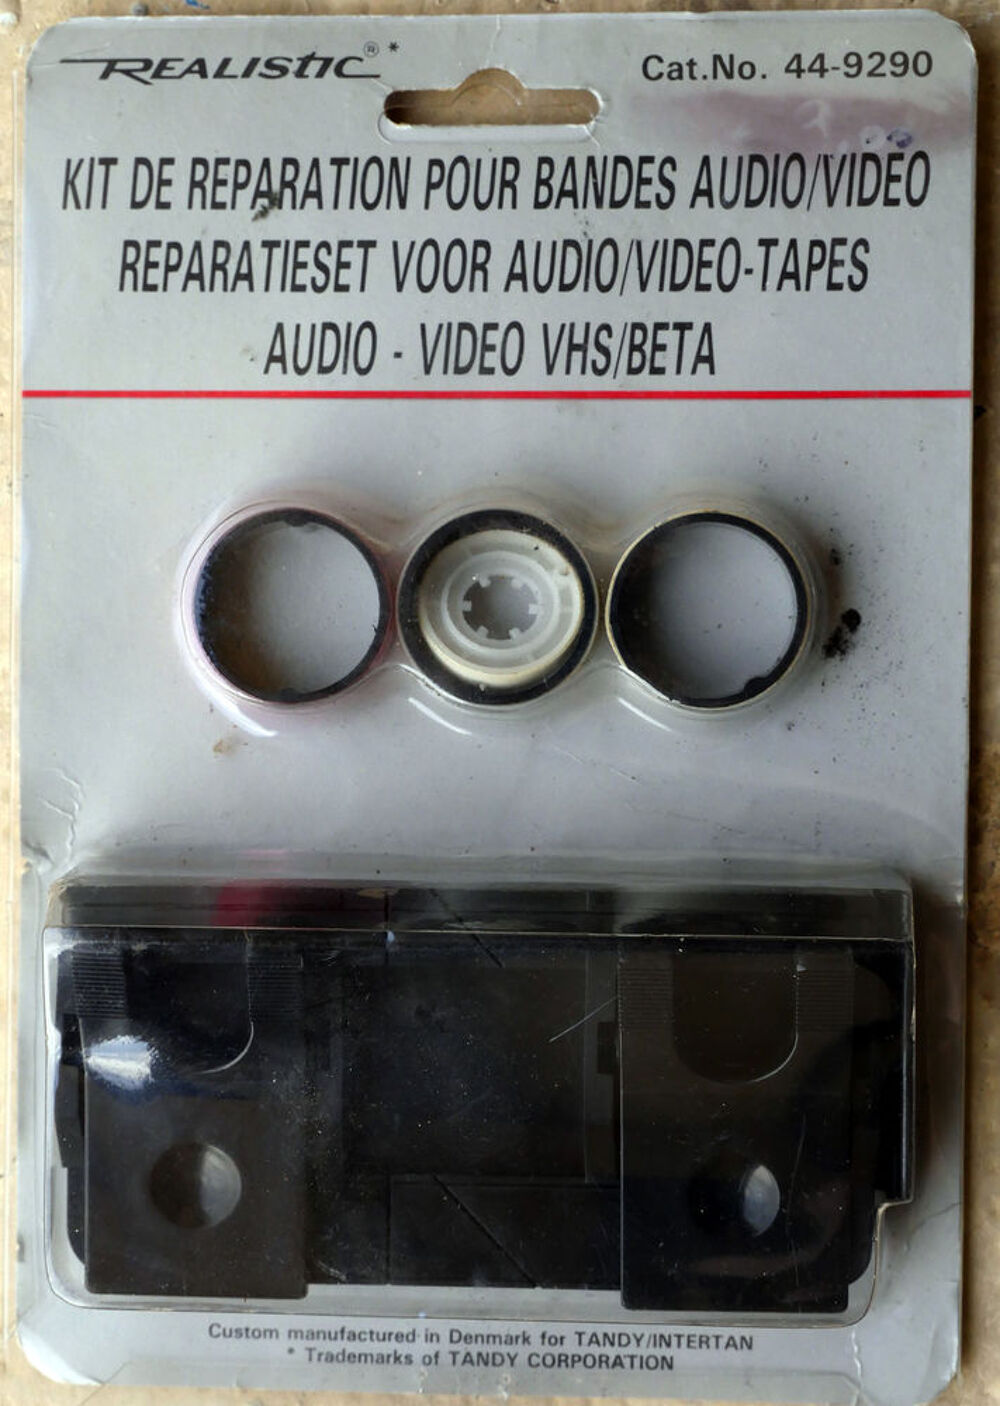 Kit de r&eacute;paration de cassettes vid&eacute;o VHS Photos/Video/TV